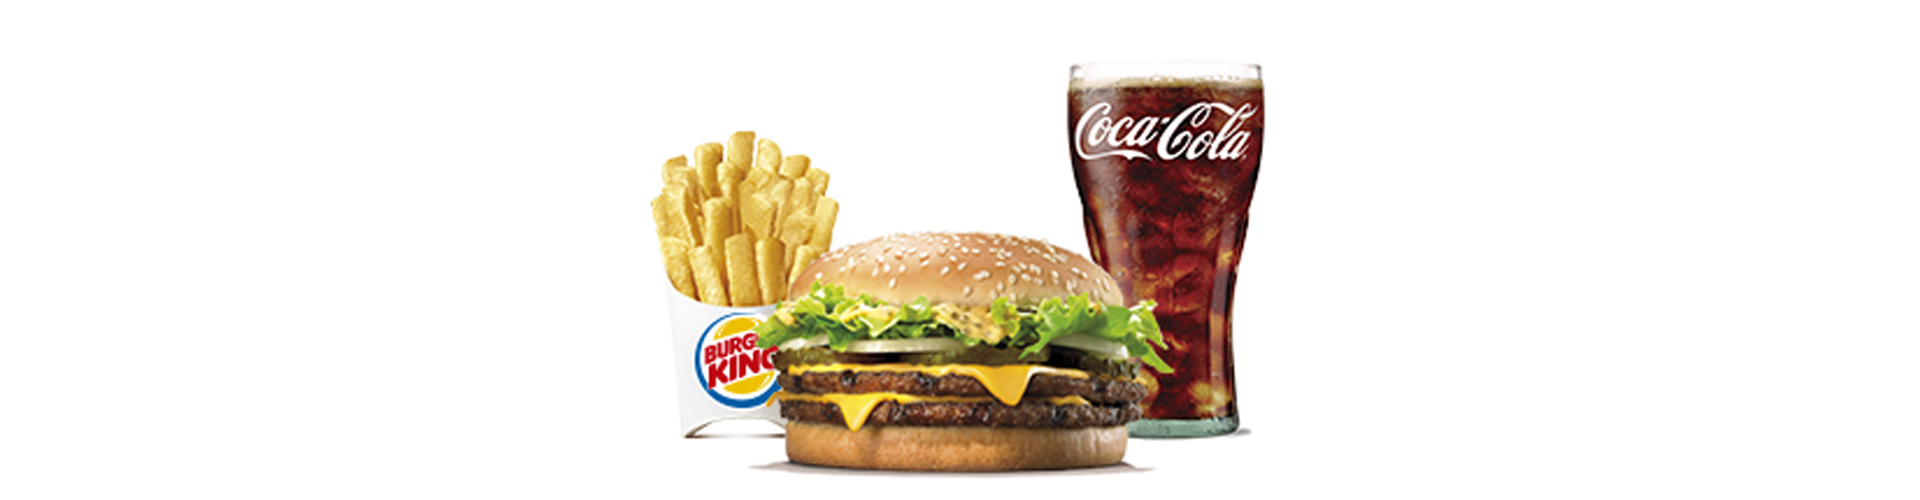 menu-big-king-burgerking-40001712-sprite-aros